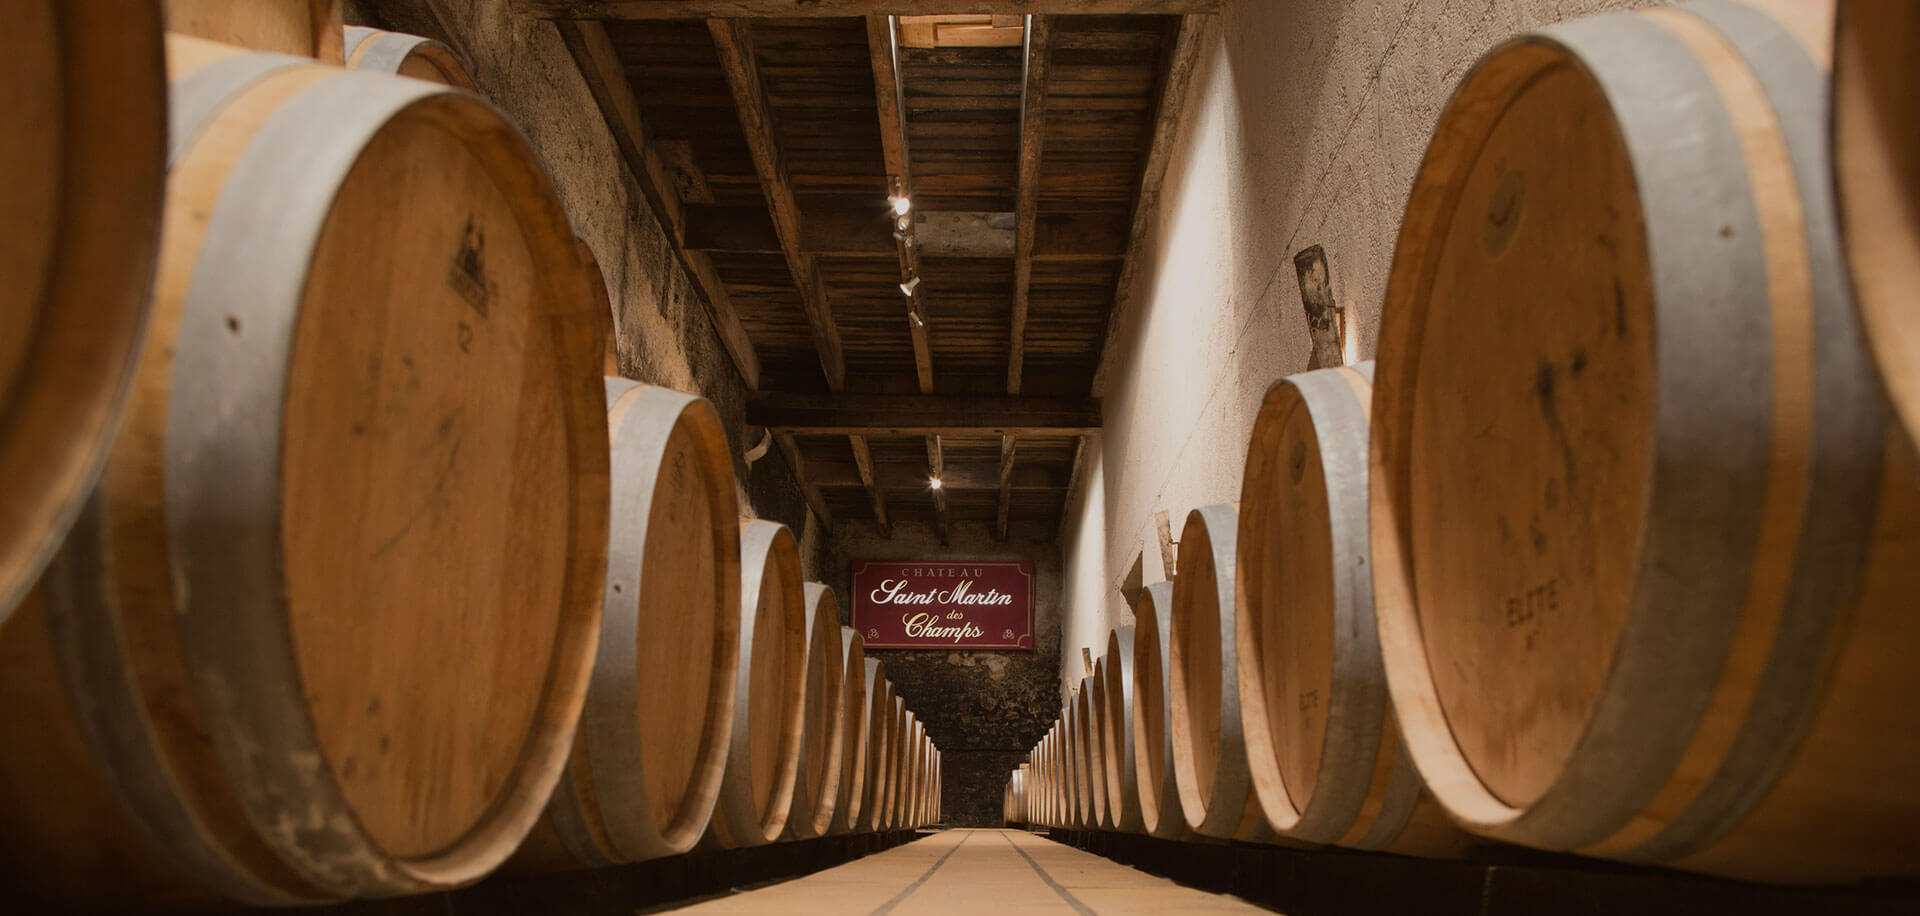 AOP Saint Chinian vinification cellar